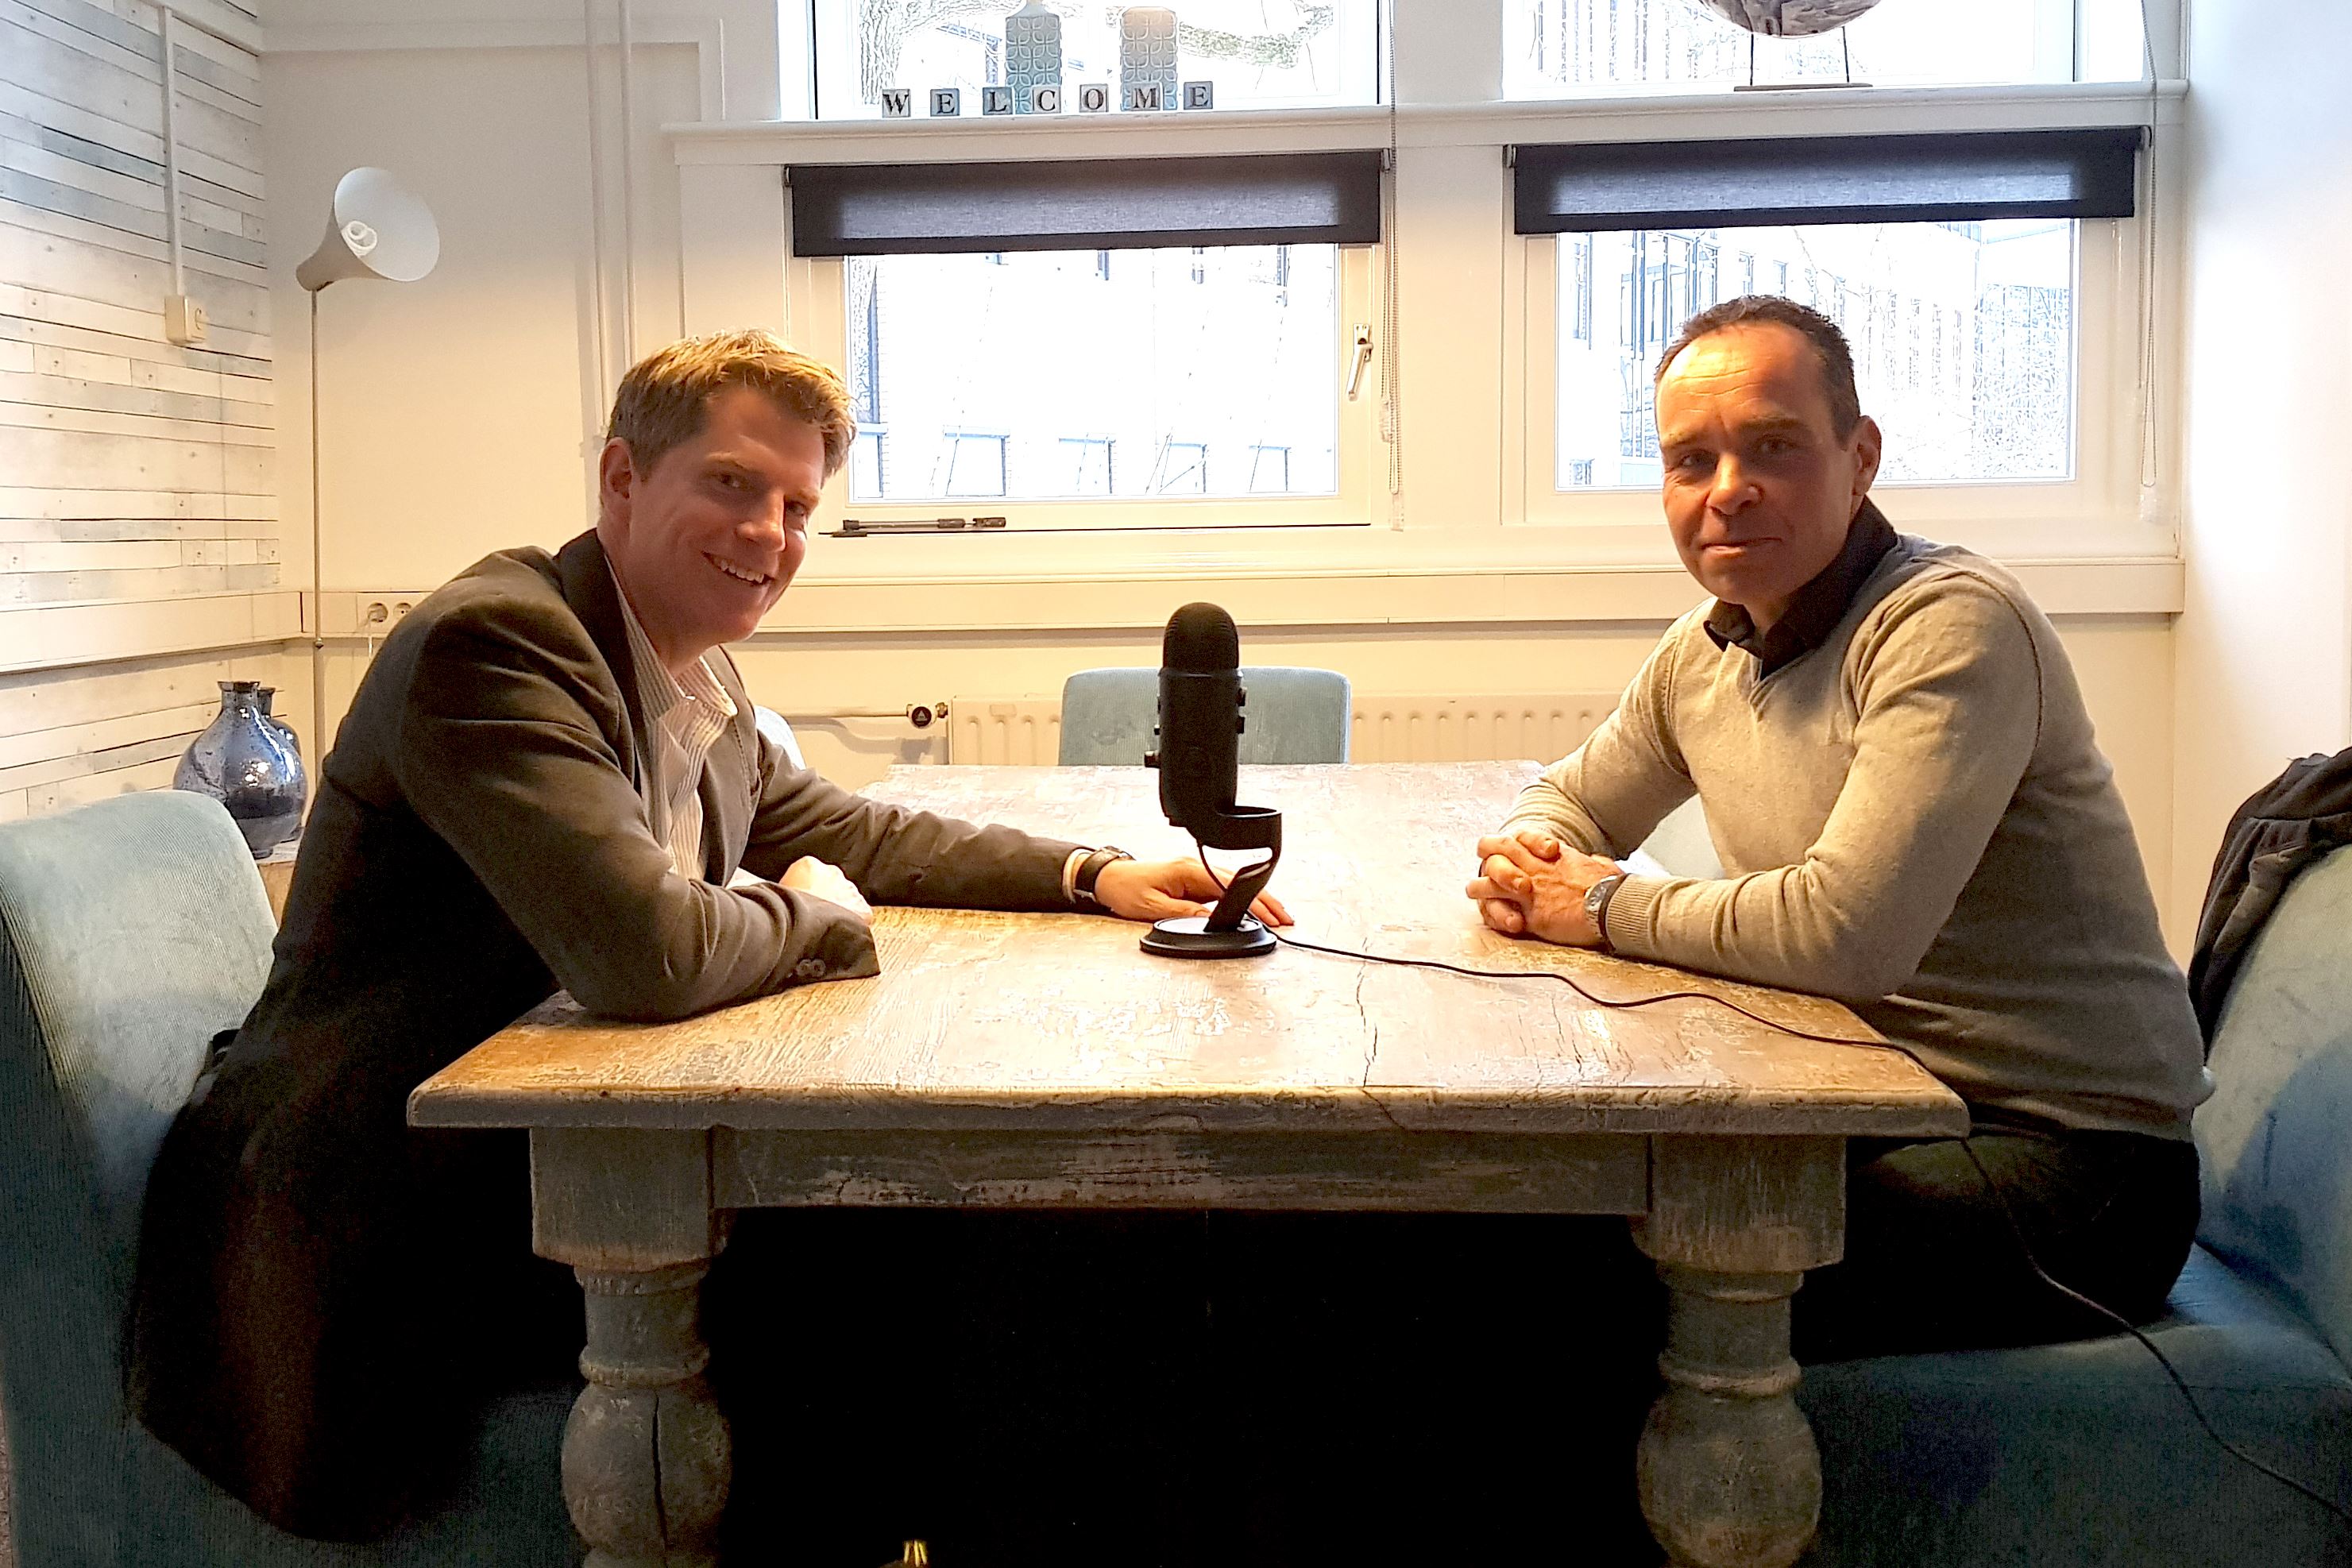 Twee mannen zitten rond een tafel, op de tafel staat een microfoon, ze nemen een podcast op.